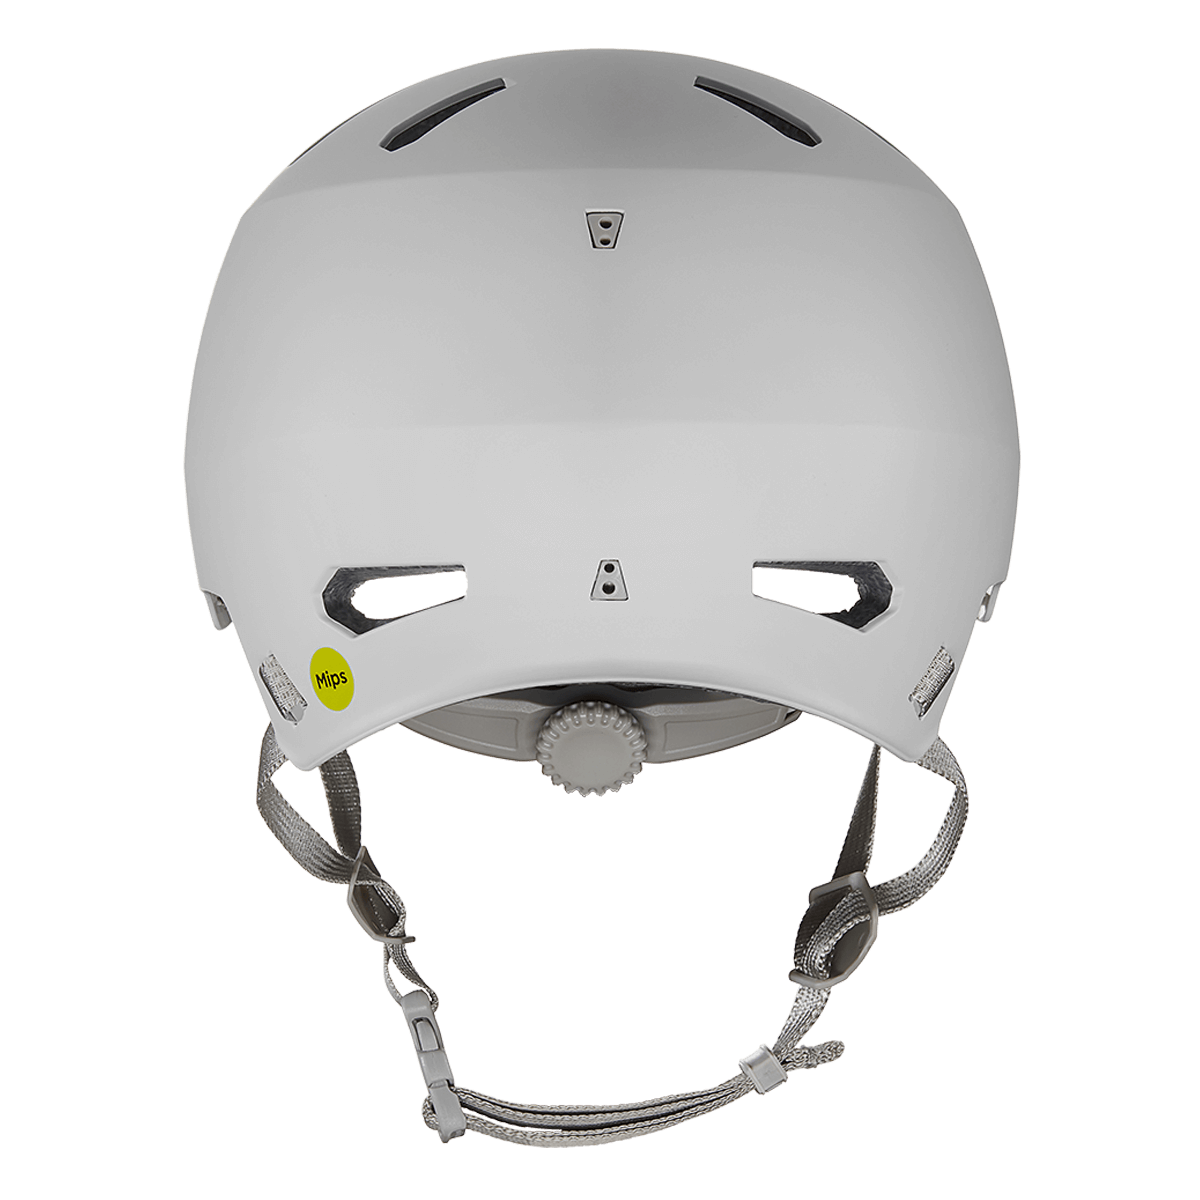 Macon 2.0 MIPS Bike Helmet